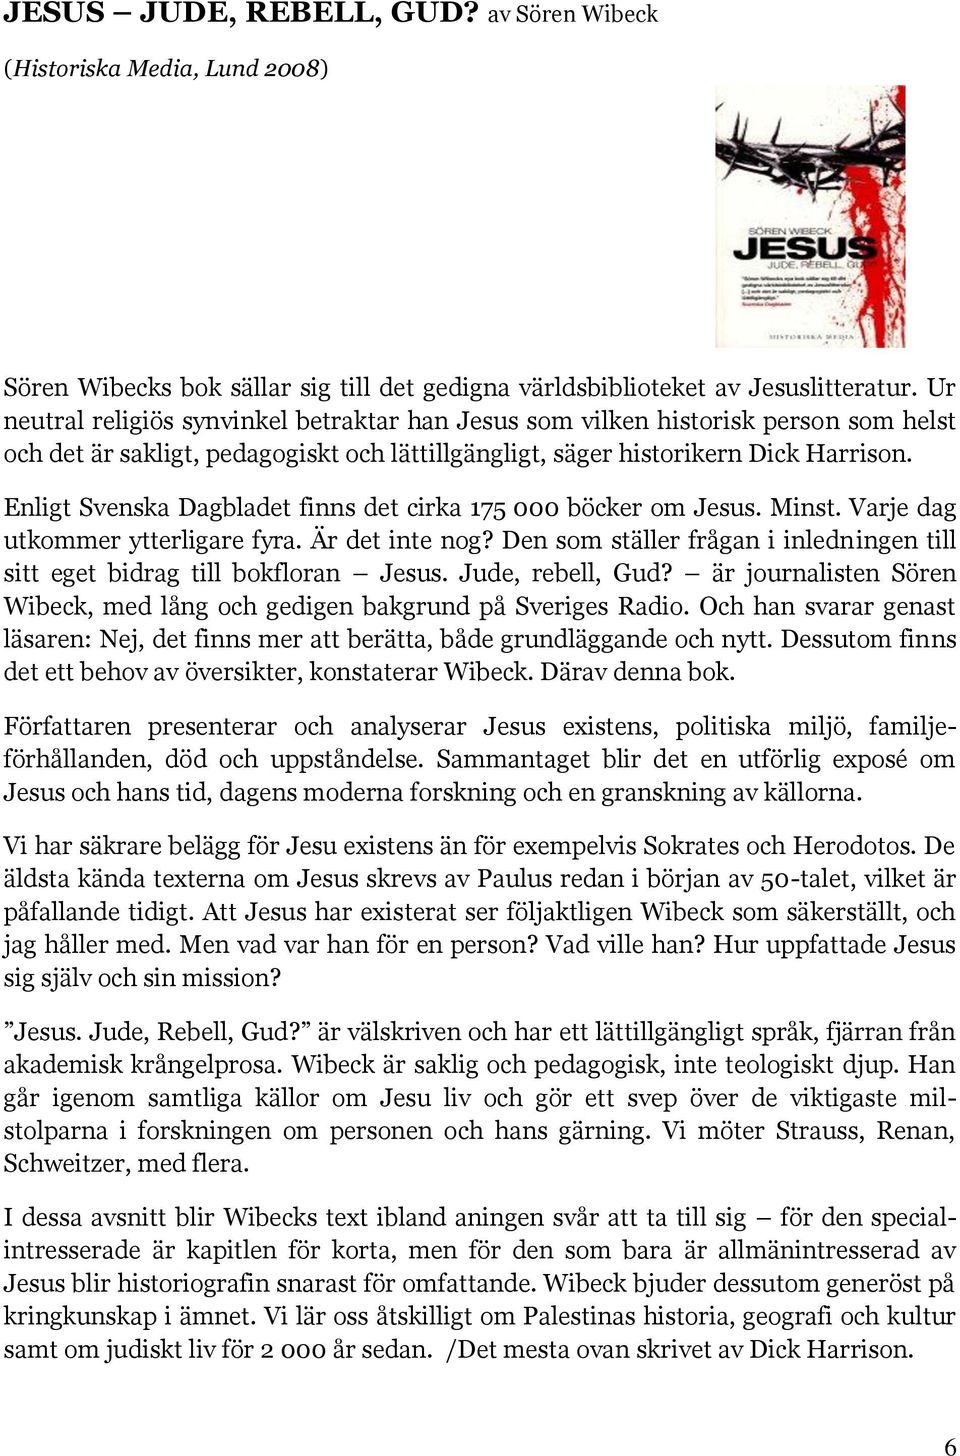 Enligt Svenska Dagbladet finns det cirka 175 000 böcker om Jesus. Minst. Varje dag utkommer ytterligare fyra. Är det inte nog?